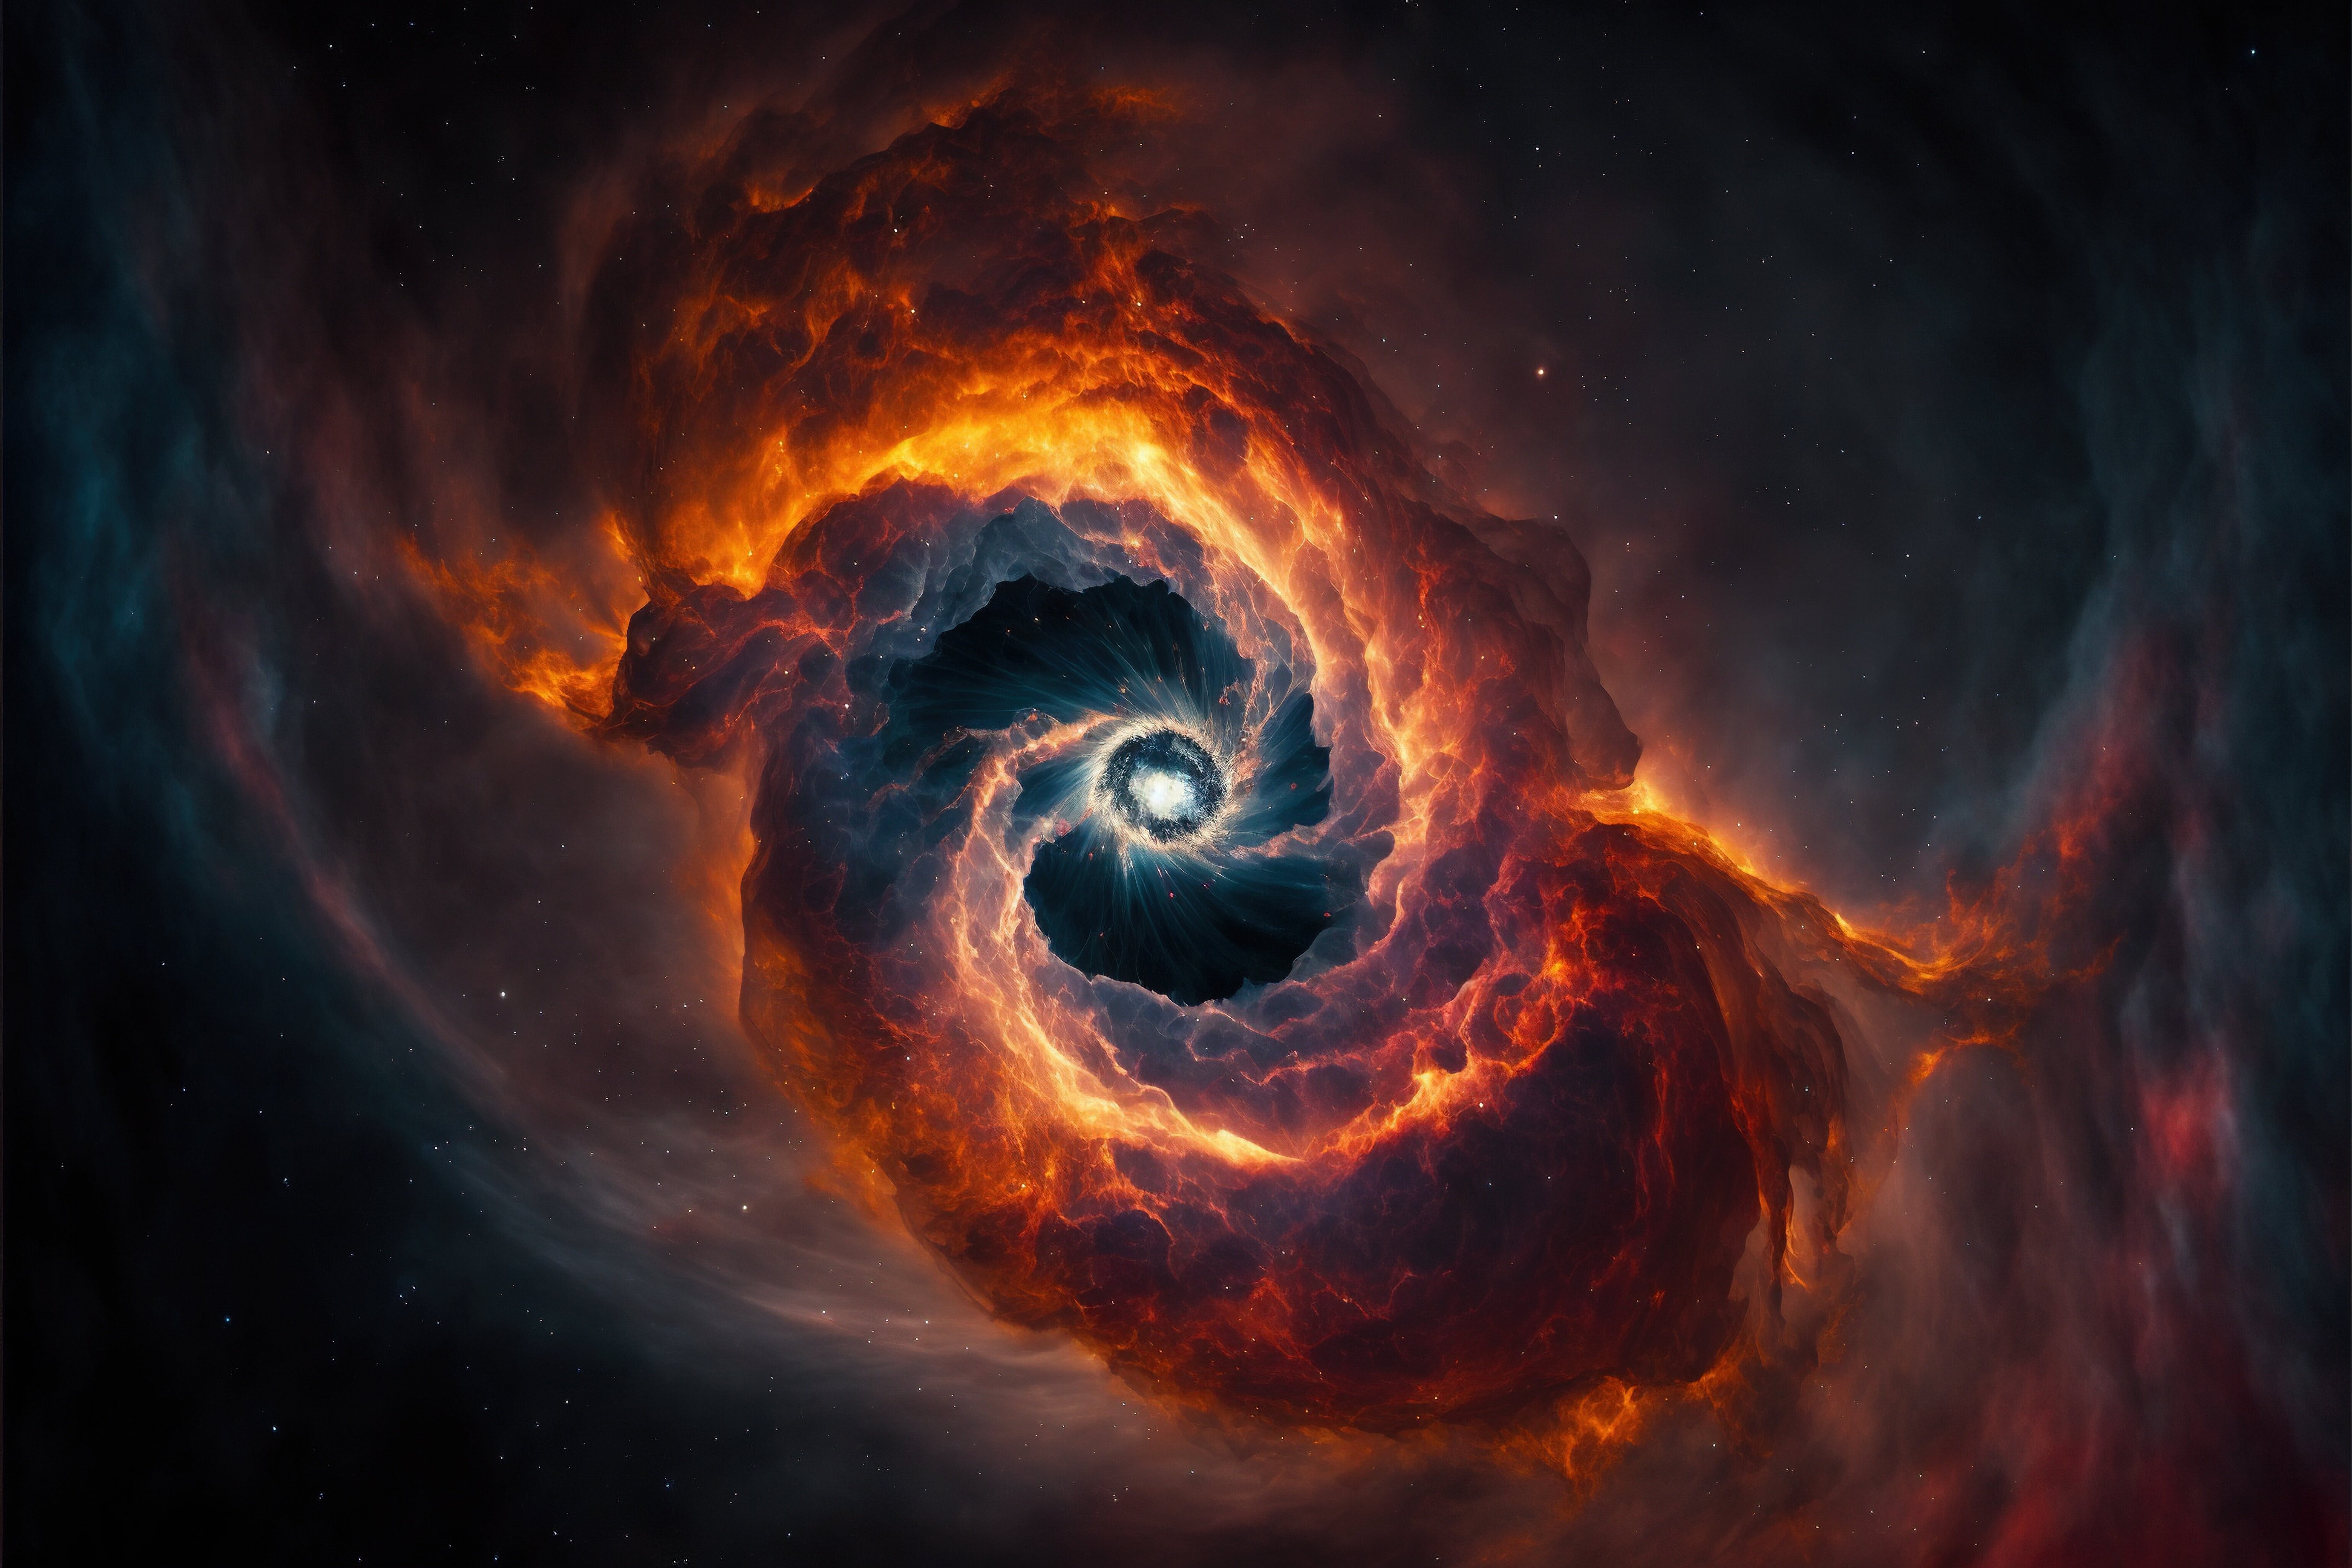 Sur son passage, le trou noir a provoqué des chocs dans le milieu circumgalactique, contractant le gaz et entrainant la formation d'étoiles ! © Oleg, Adobe Stock